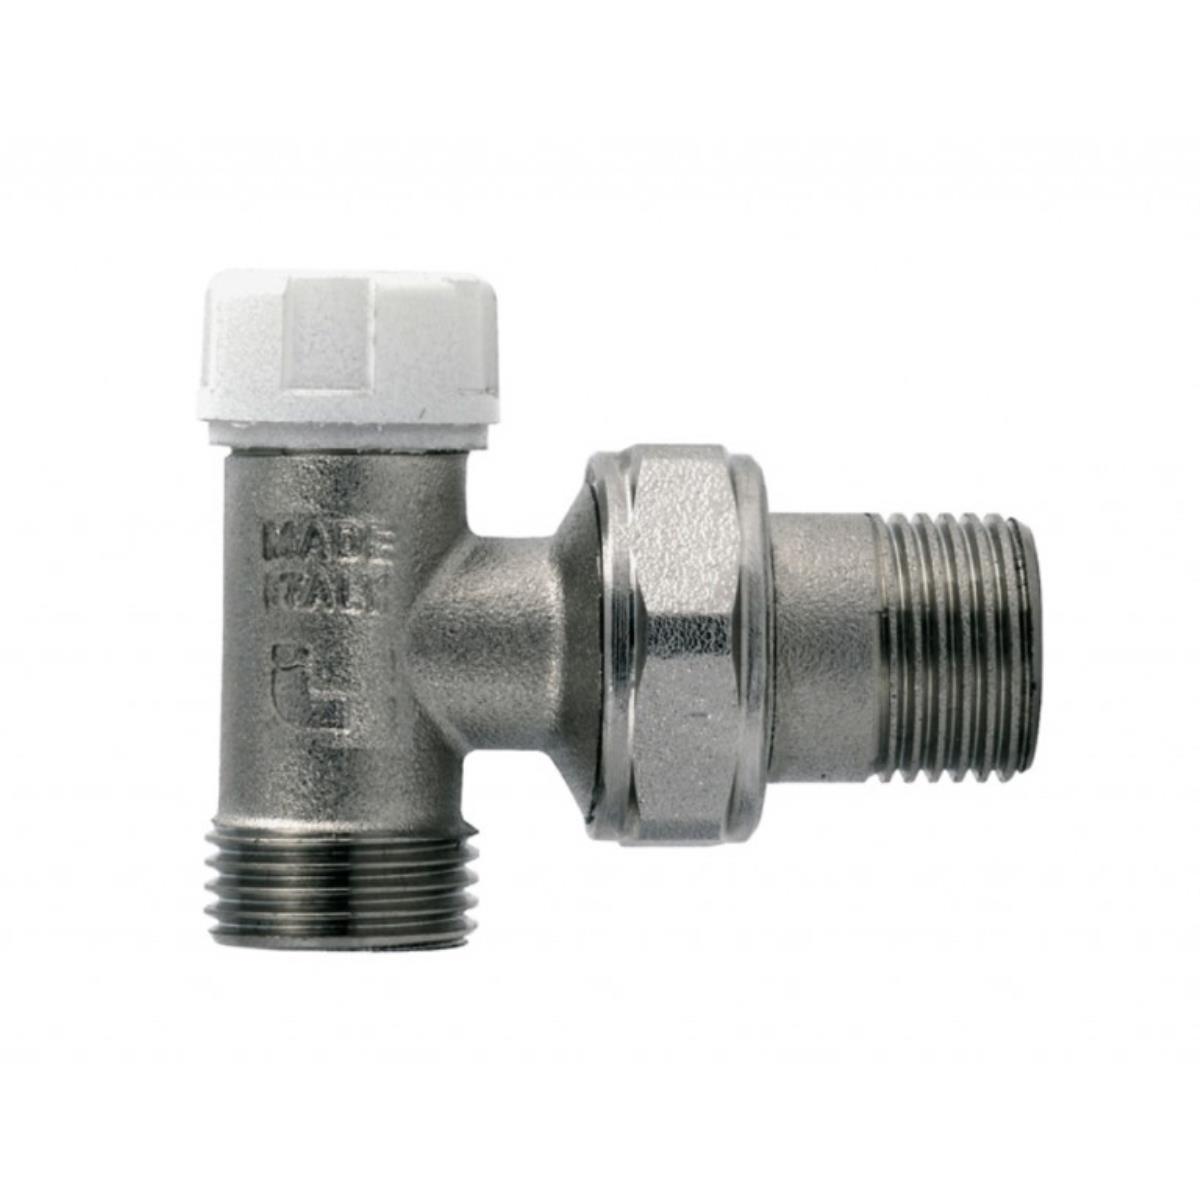 Клапан для радиатора УГЛОВОЙ нижн. 1/2" к соединениям типа Multi-Fit арт 510 (397) ITAP